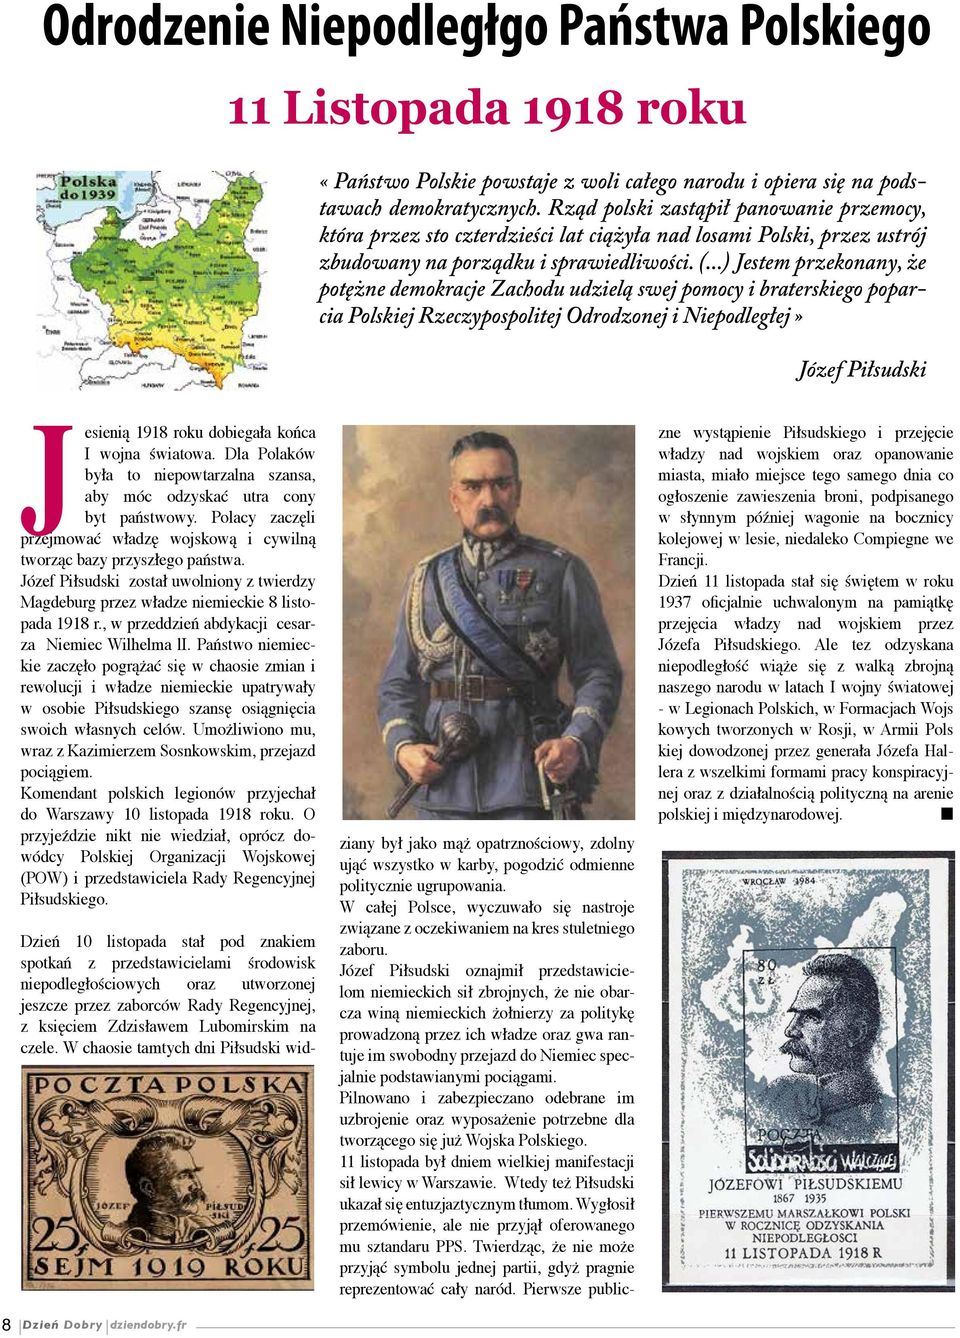 ..) Jestem przekonany, że potężne demokracje Zachodu udzielą swej pomocy i braterskiego poparcia Polskiej Rzeczypos politej Odrodzonej i Niepodległej» Józef Piłsudski Jesienią 1918 roku dobiegała